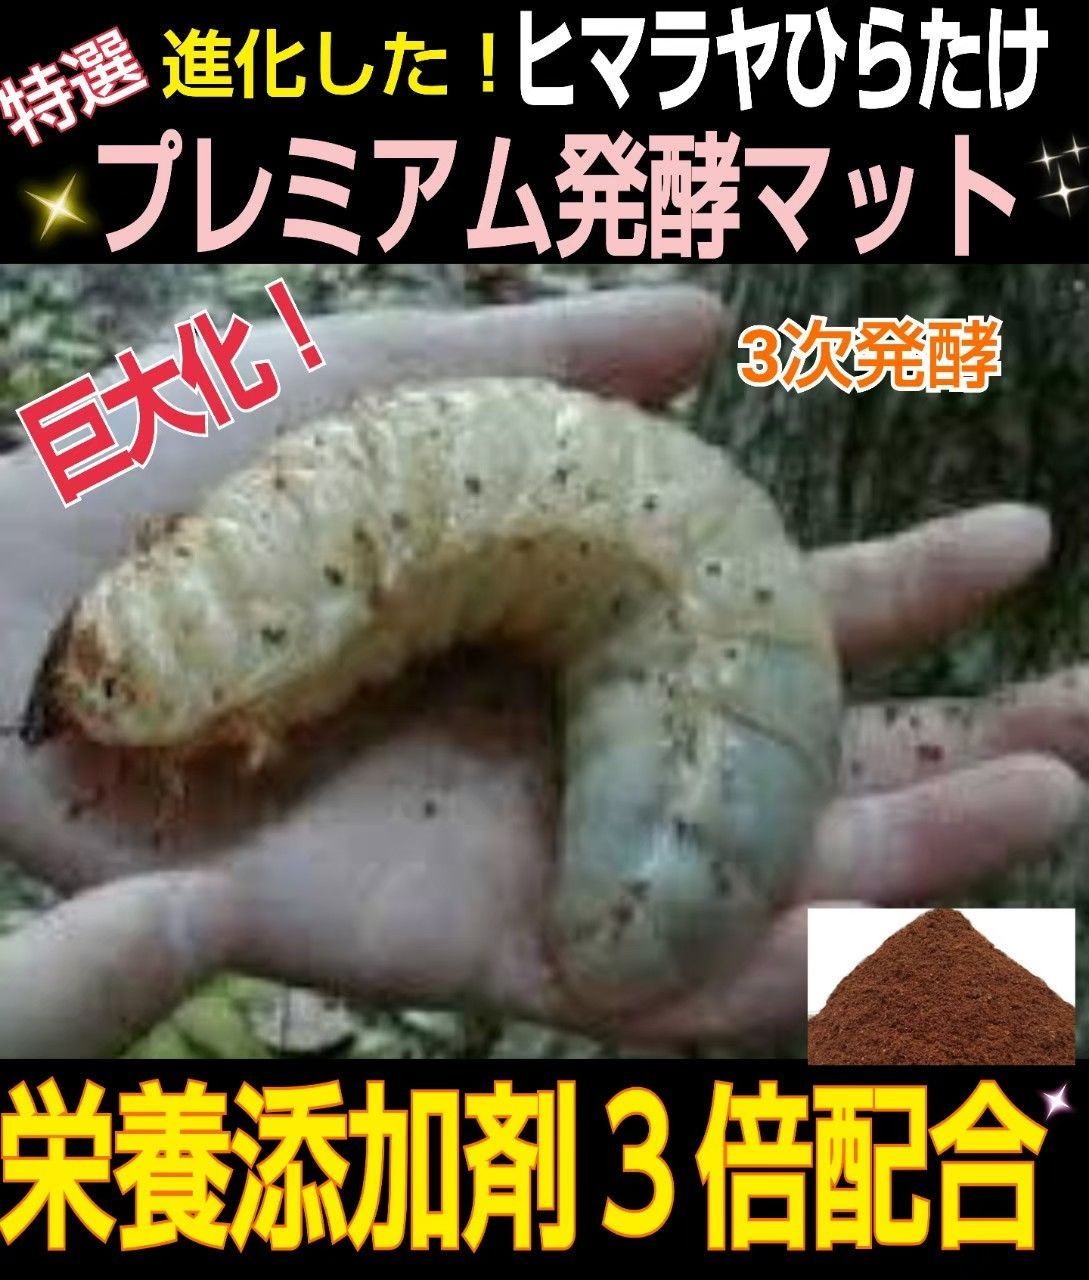 カブトムシ幼虫の餌☆ケース入りプレミアム発酵マット【8セット